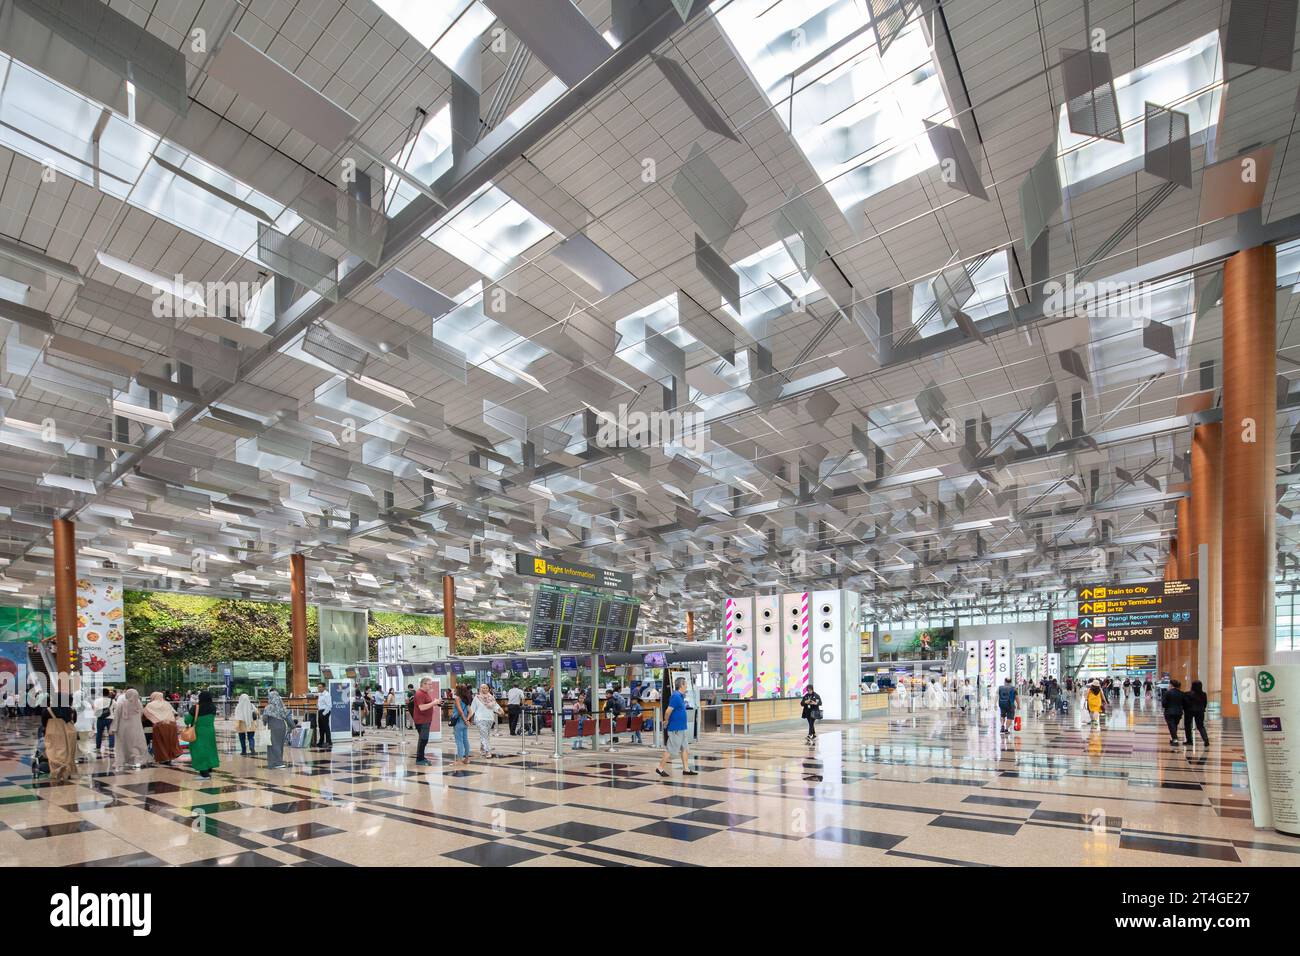 La conception du terminal 3 de l'aéroport Changi de Singapour utilise la lumière naturelle à travers les fenêtres du sol au plafond. Banque D'Images